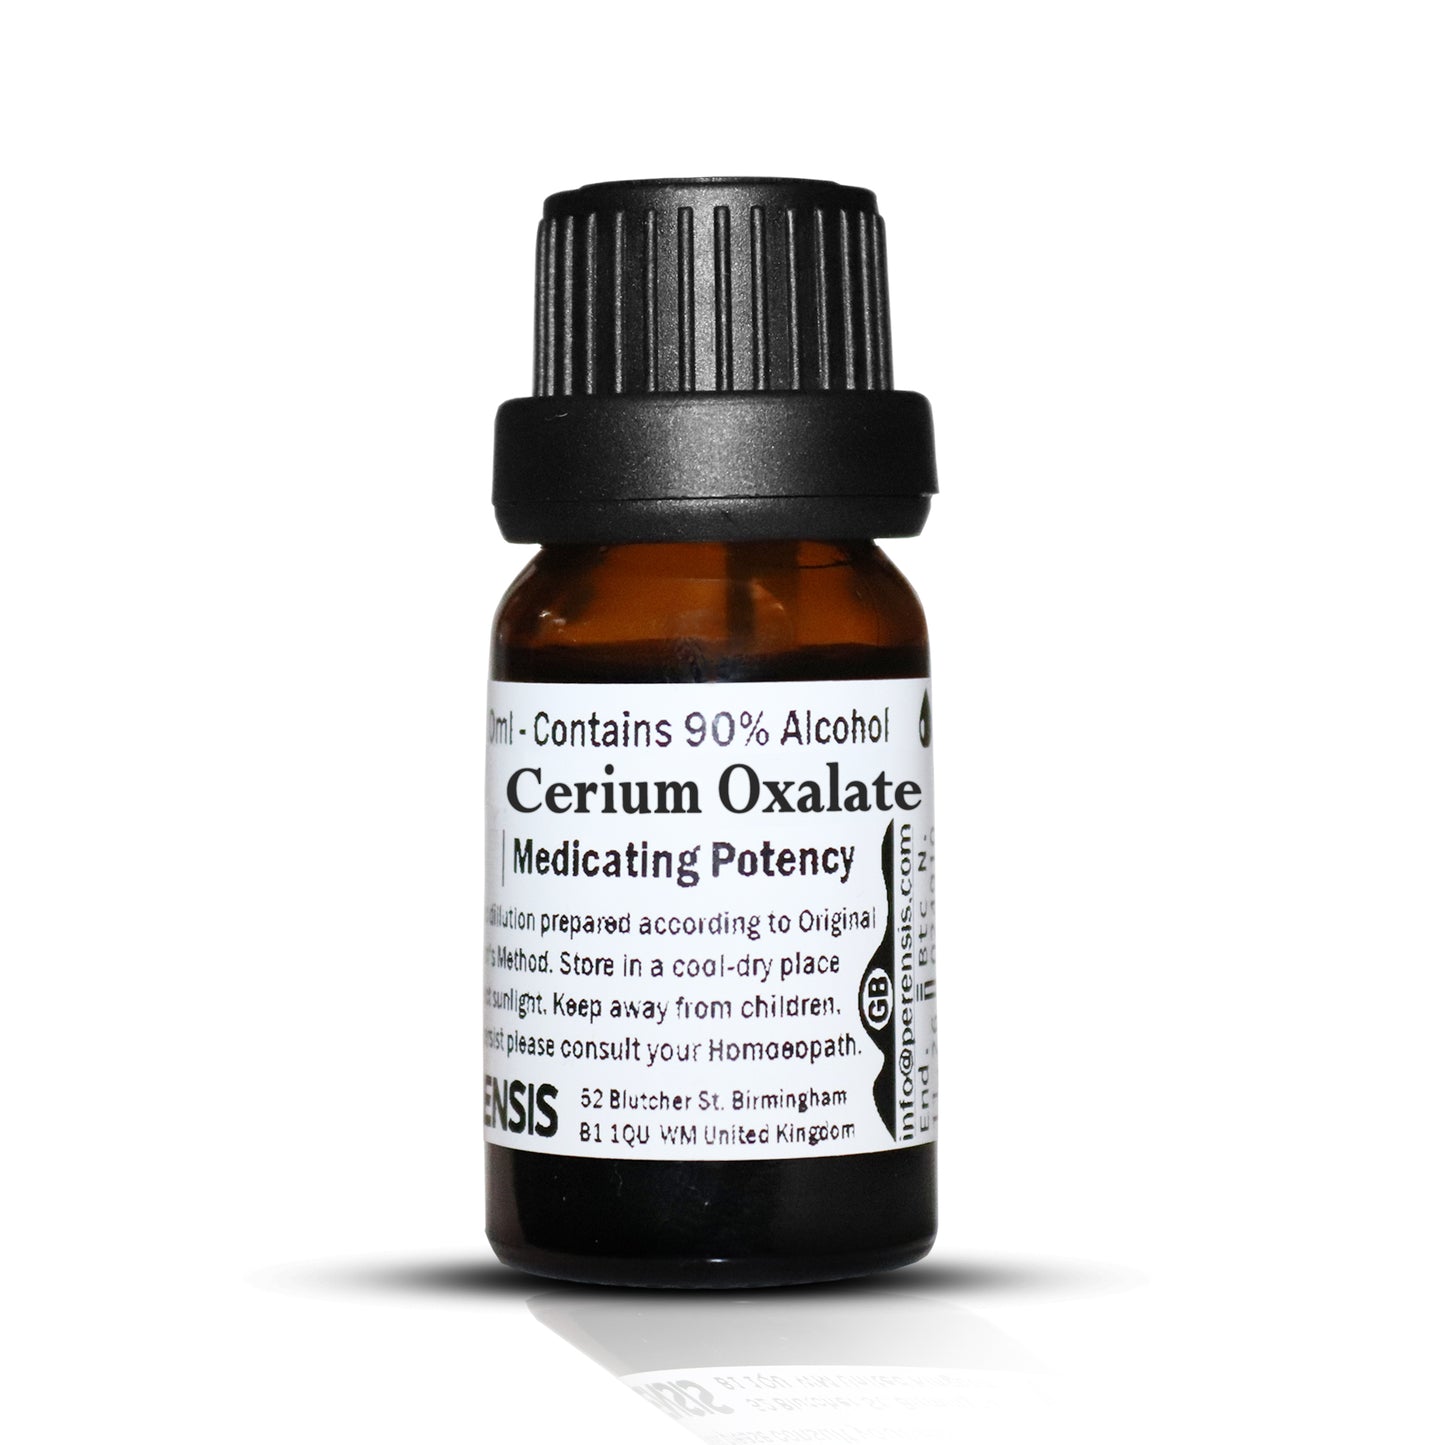 Cerium Oxalate